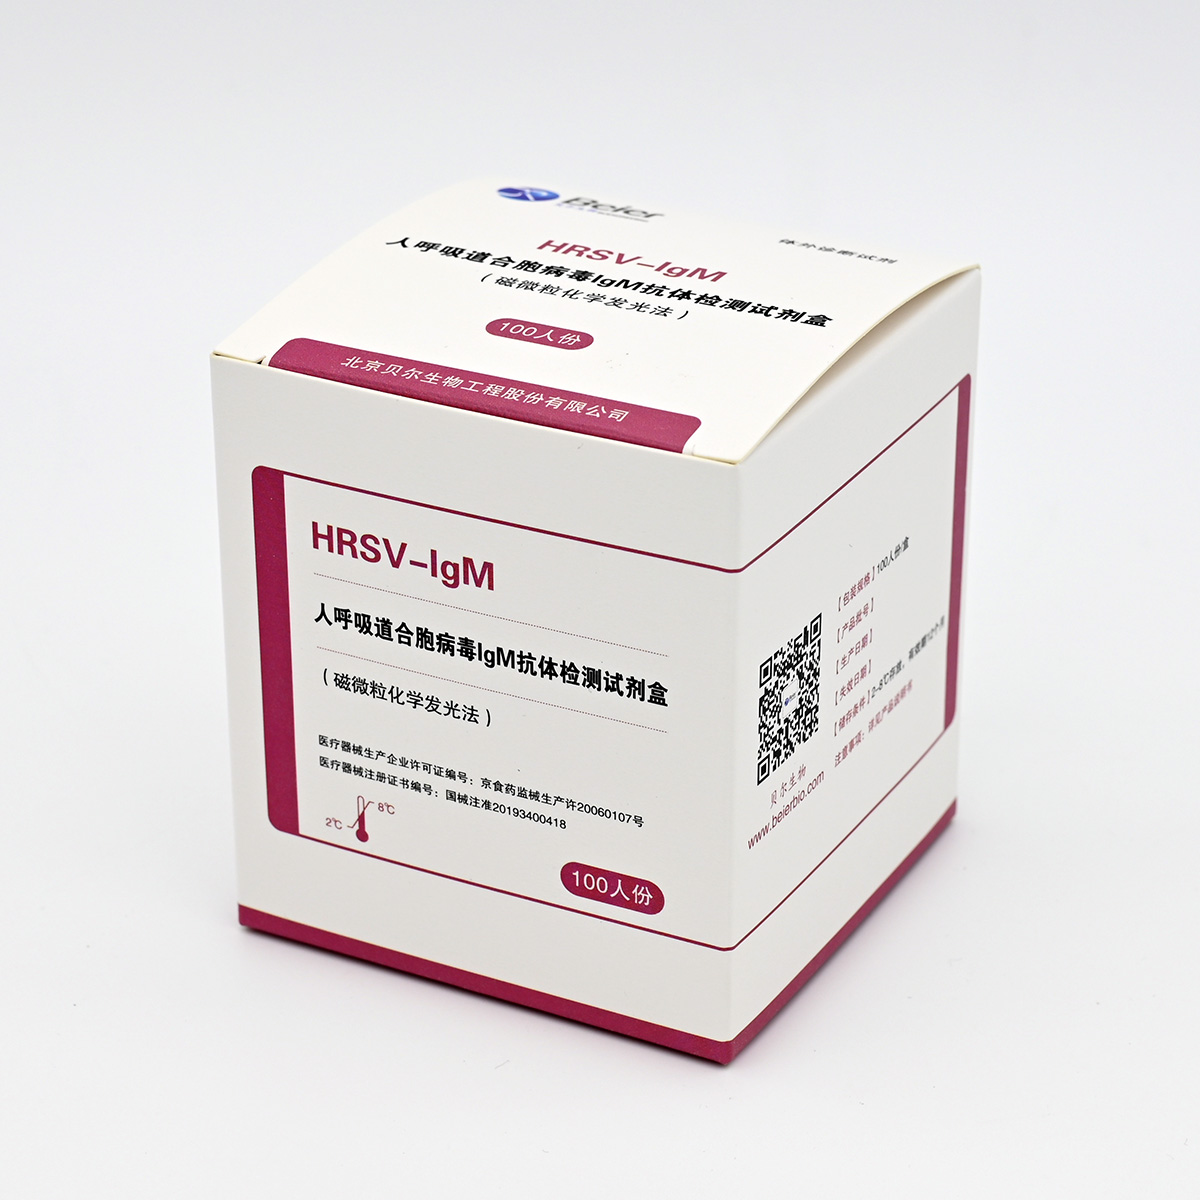 【贝尔】人呼吸道合胞病毒IgM抗体检测试剂盒(磁微粒化学发光法)